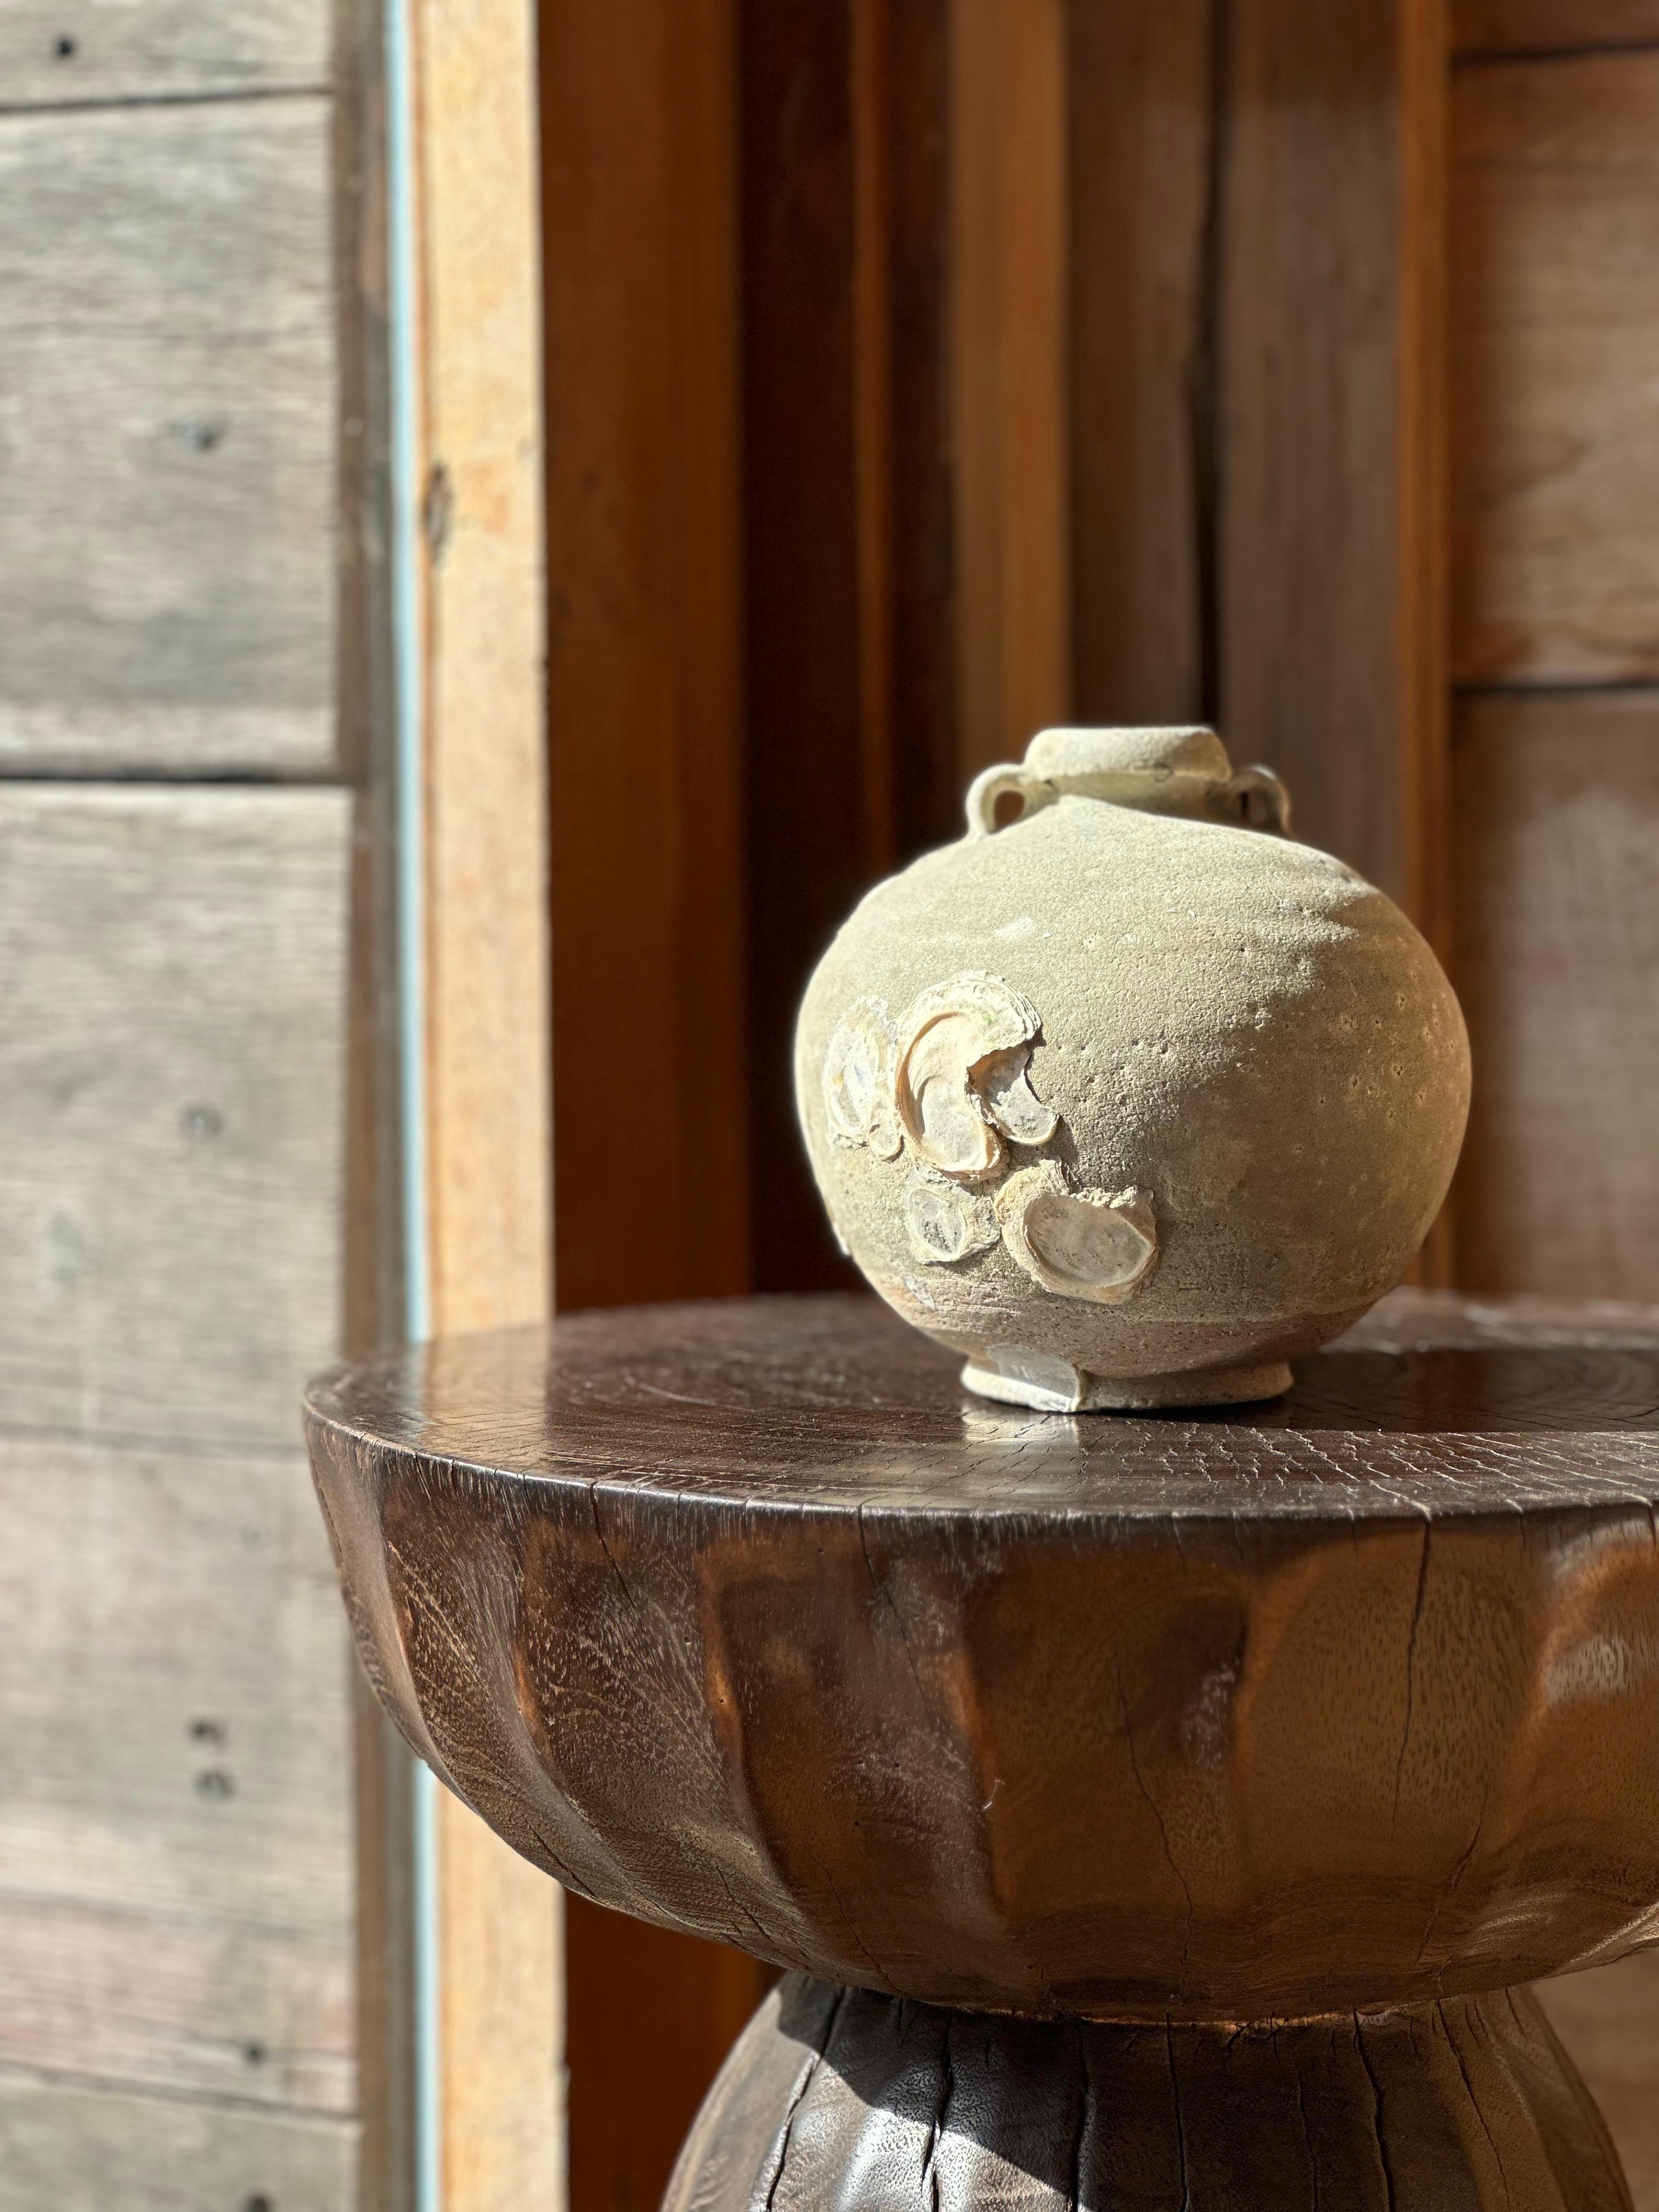 Ein wunderschönes Beispiel für einen Sawankhalok-Keramikkrug aus dem 17. Jahrhundert aus dem Königreich Sukhothai, Thailand. Er hat einen wunderbar dezenten türkisen Unterton und einen natürlichen Meeresbewuchs, der sich nach mehreren Jahrhunderten